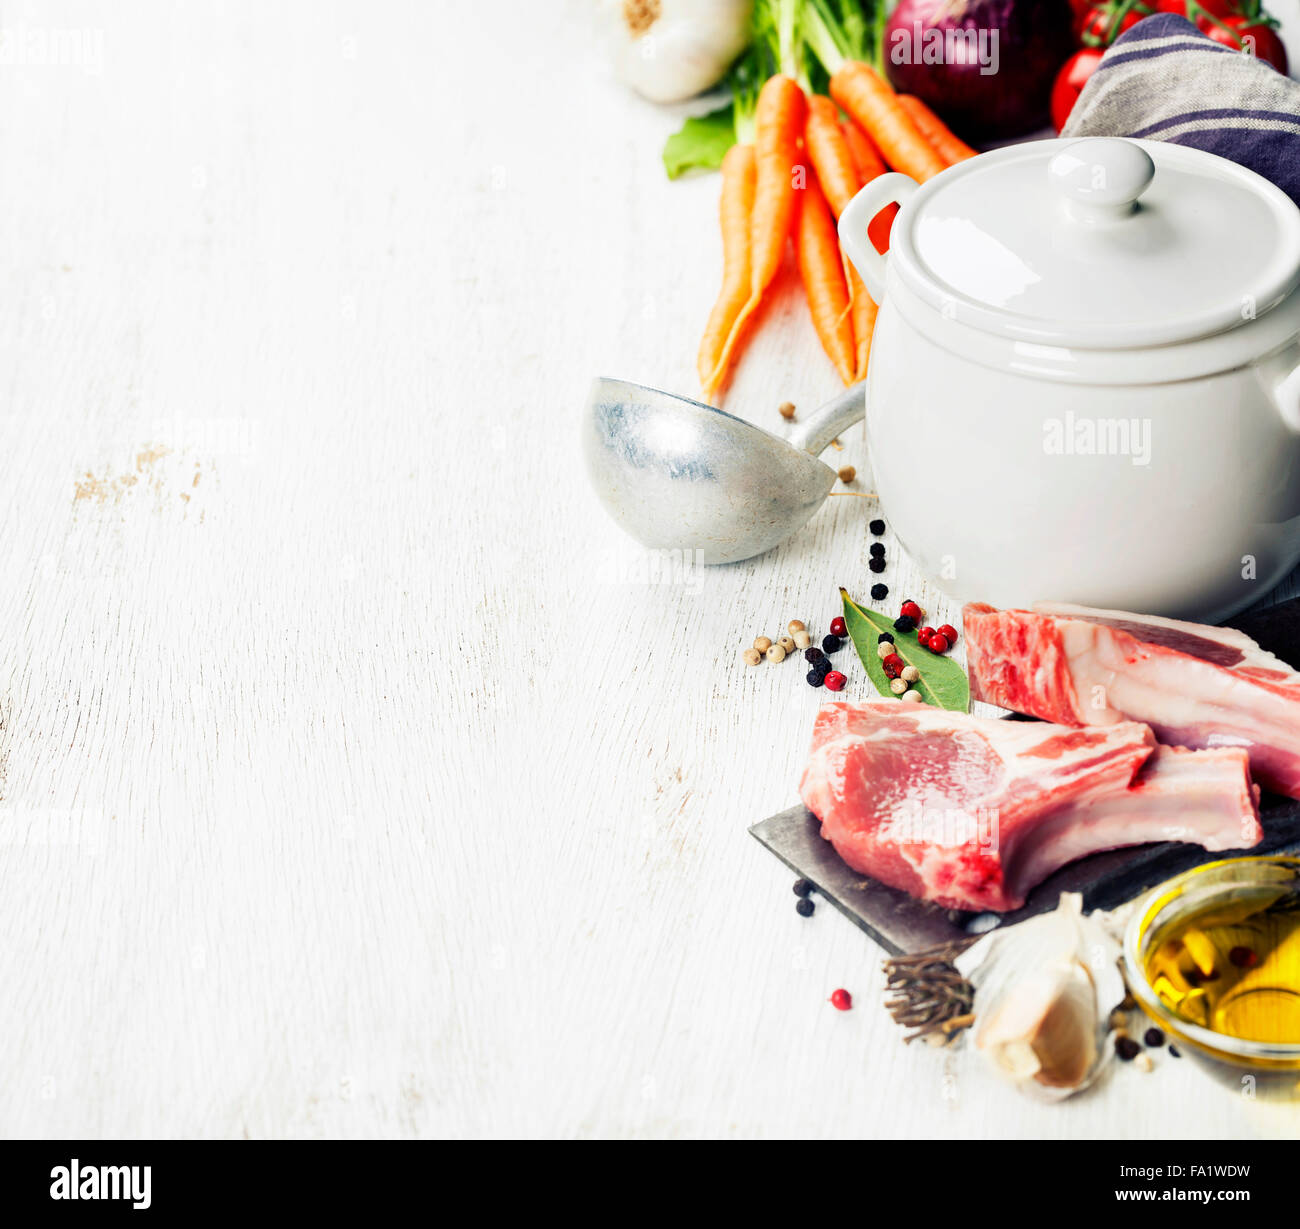 Les légumes et la viande avec les herbes et les épices et d'ingrédients pour un bouillon ou une soupe, l'arrière-plan de l'alimentation Banque D'Images